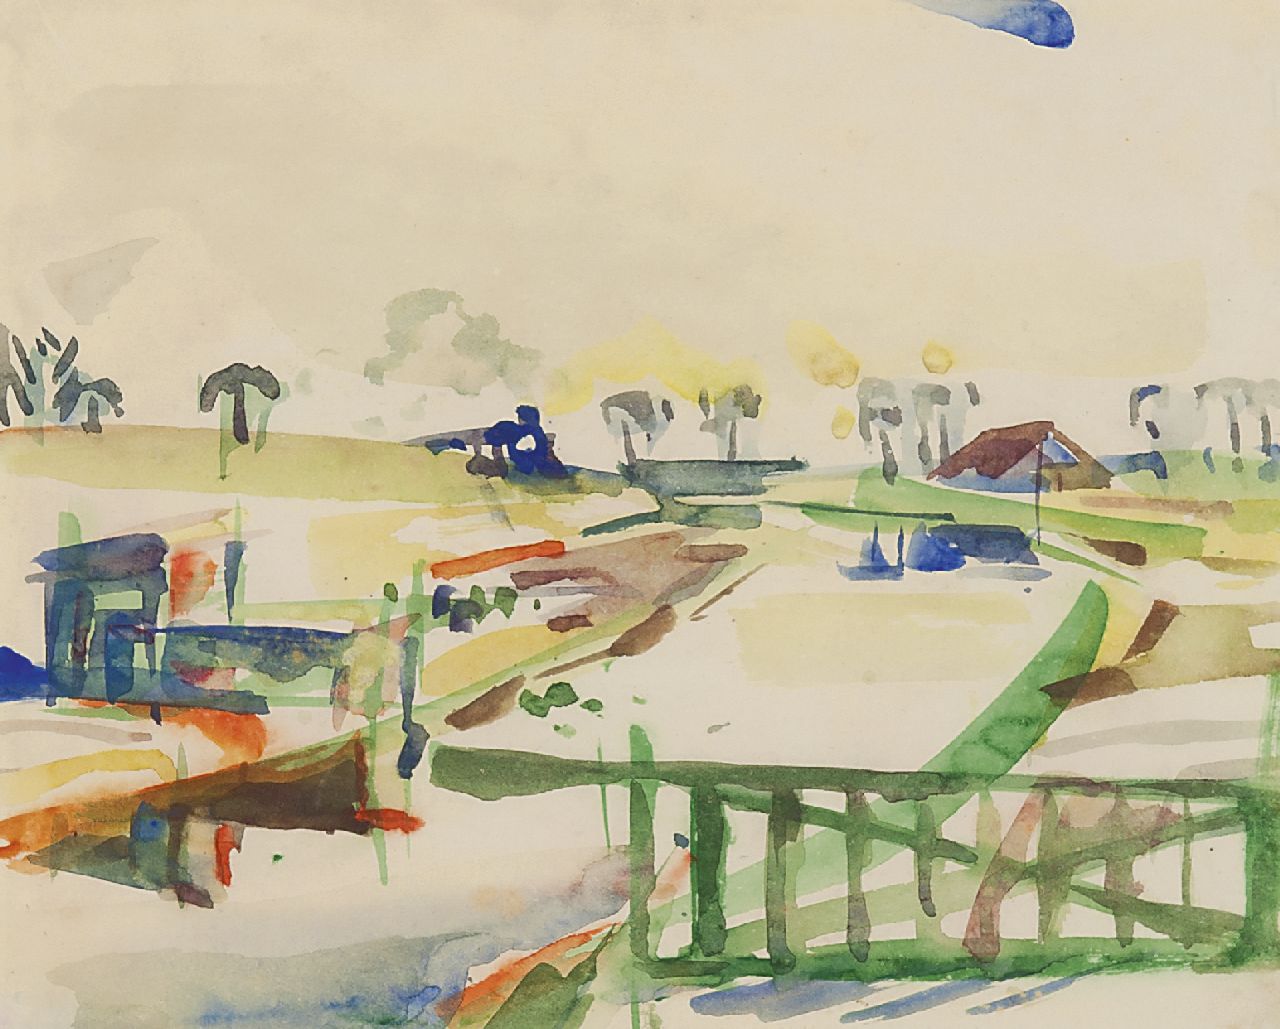 Jordens J.G.  | 'Jan' Gerrit Jordens, Landschaft mit Bauernhof, Aquarell auf Papier 22,5 x 28,0 cm, Unterzeichnet r.o. und datiert 16-3-'53